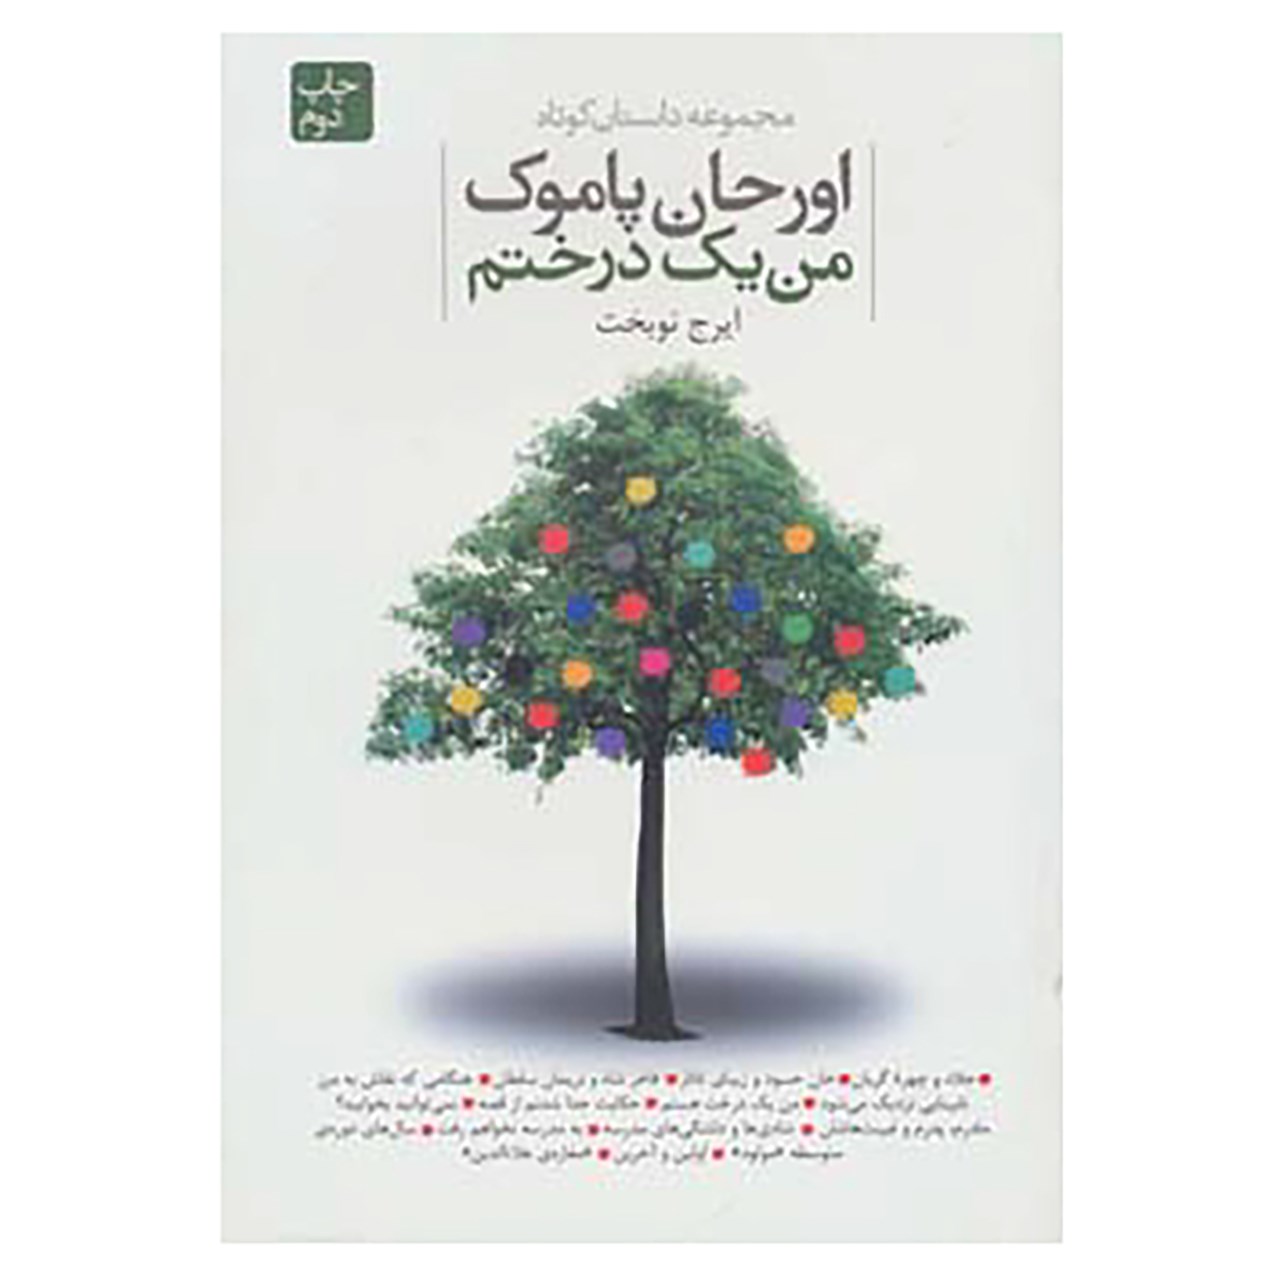 کتاب من یک درختم اثر اورهان پاموک